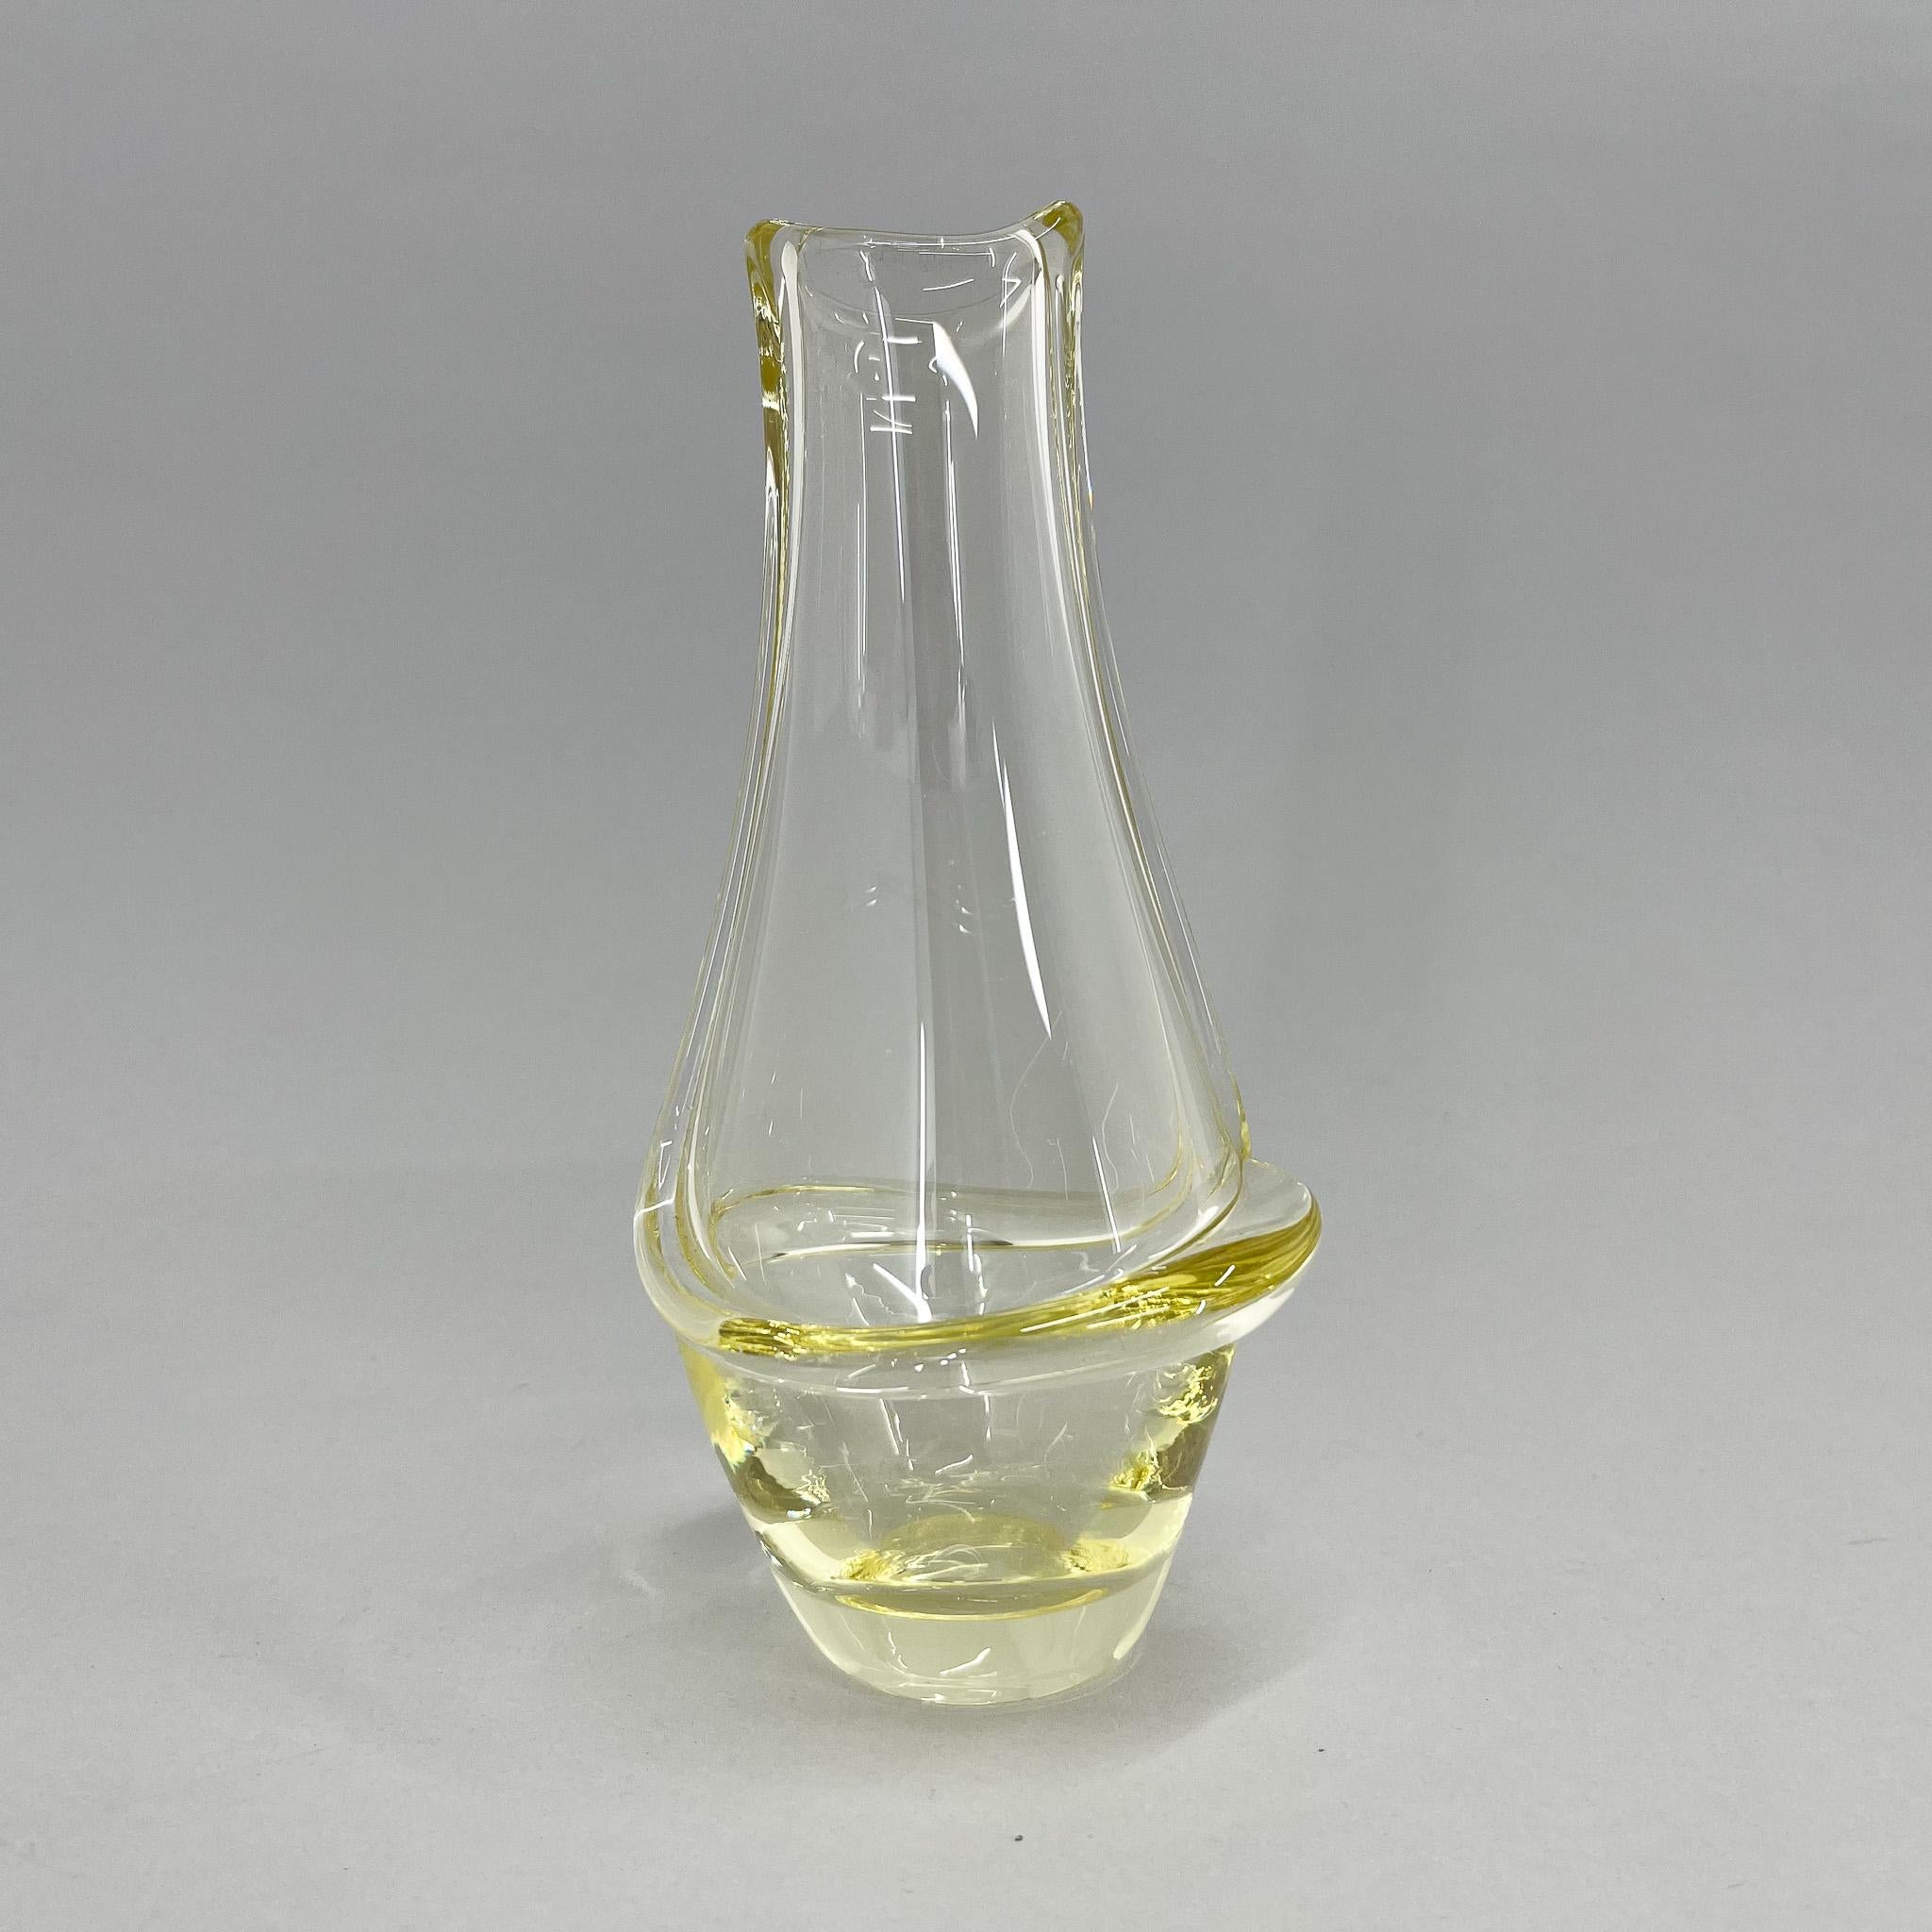 Petit vase vintage conçu par Frantisek Zemek et produit par la verrerie Mstisov dans l'ancienne Tchécoslovaquie dans les années 1960.